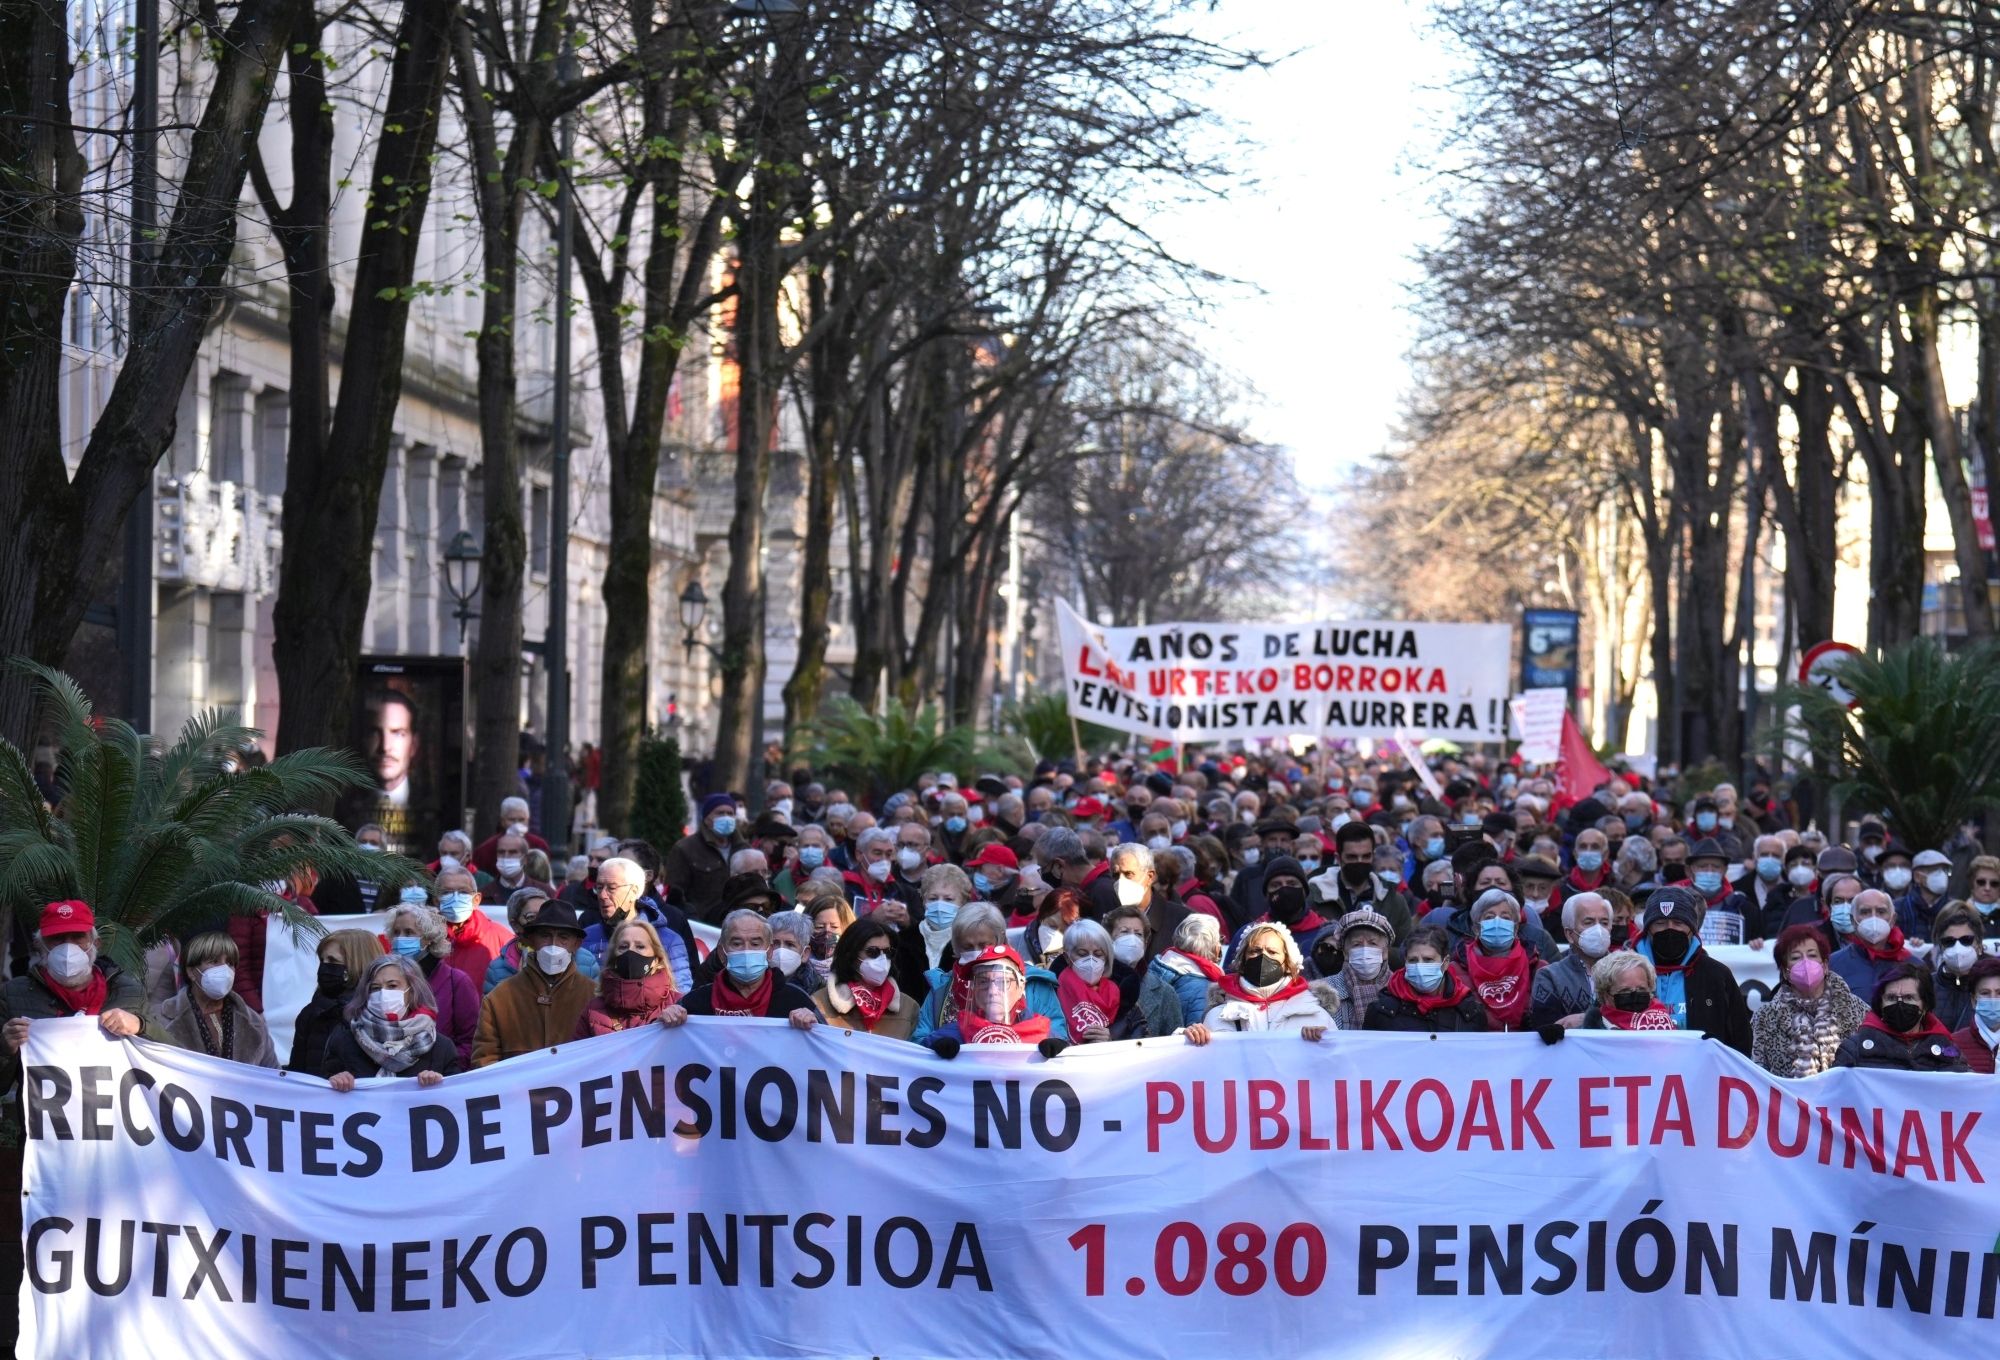 Pensionistas de toda España denuncian "trampas" y proyectos de privatización de las pensiones